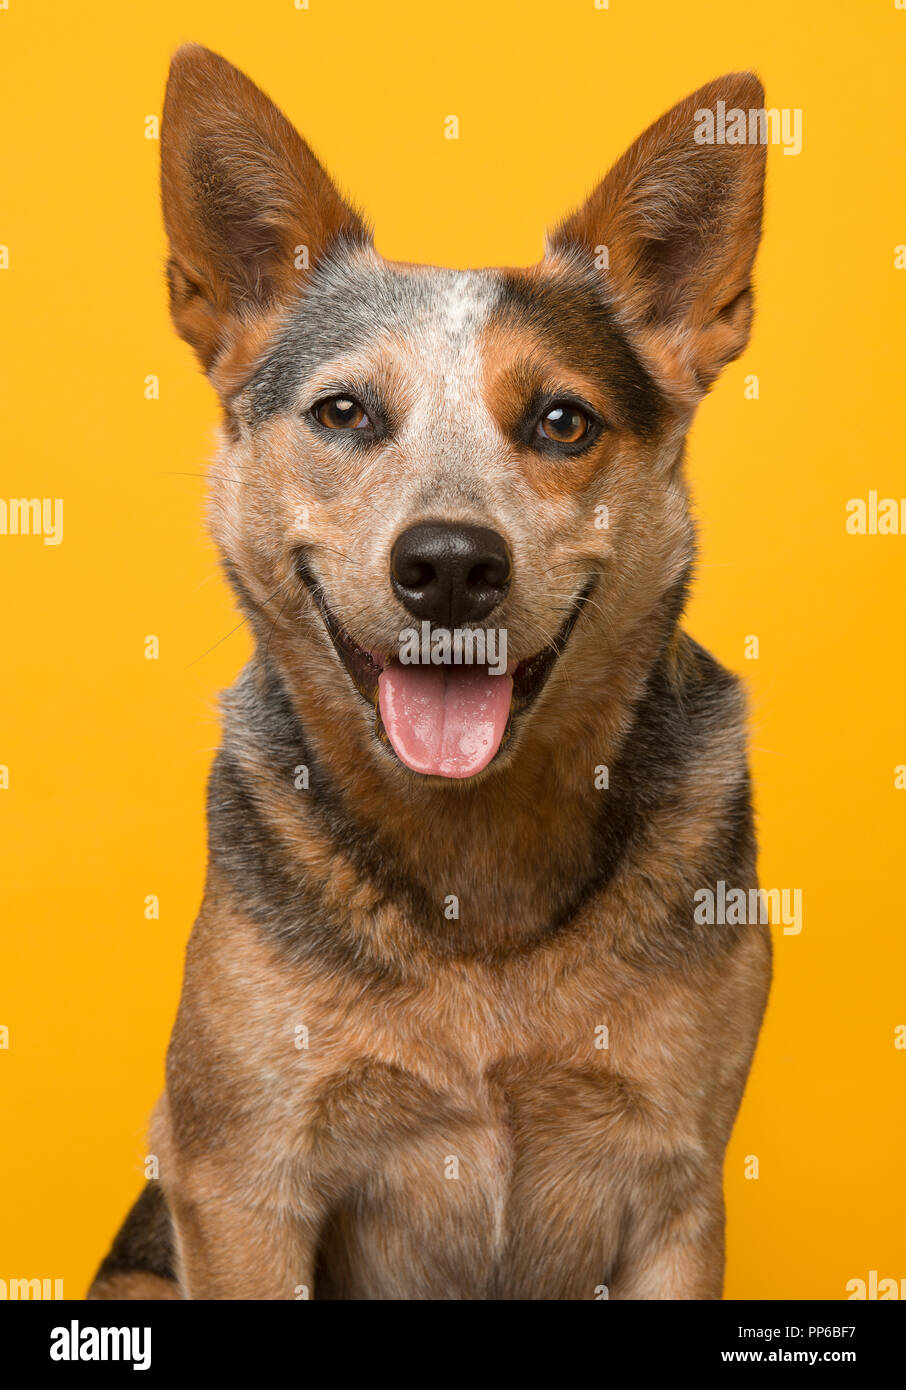 Süße Australian Cattle Dog Portrait lächelnd mit offenen Mund schauen in die Kamera auf gelbem Hintergrund Stockfoto